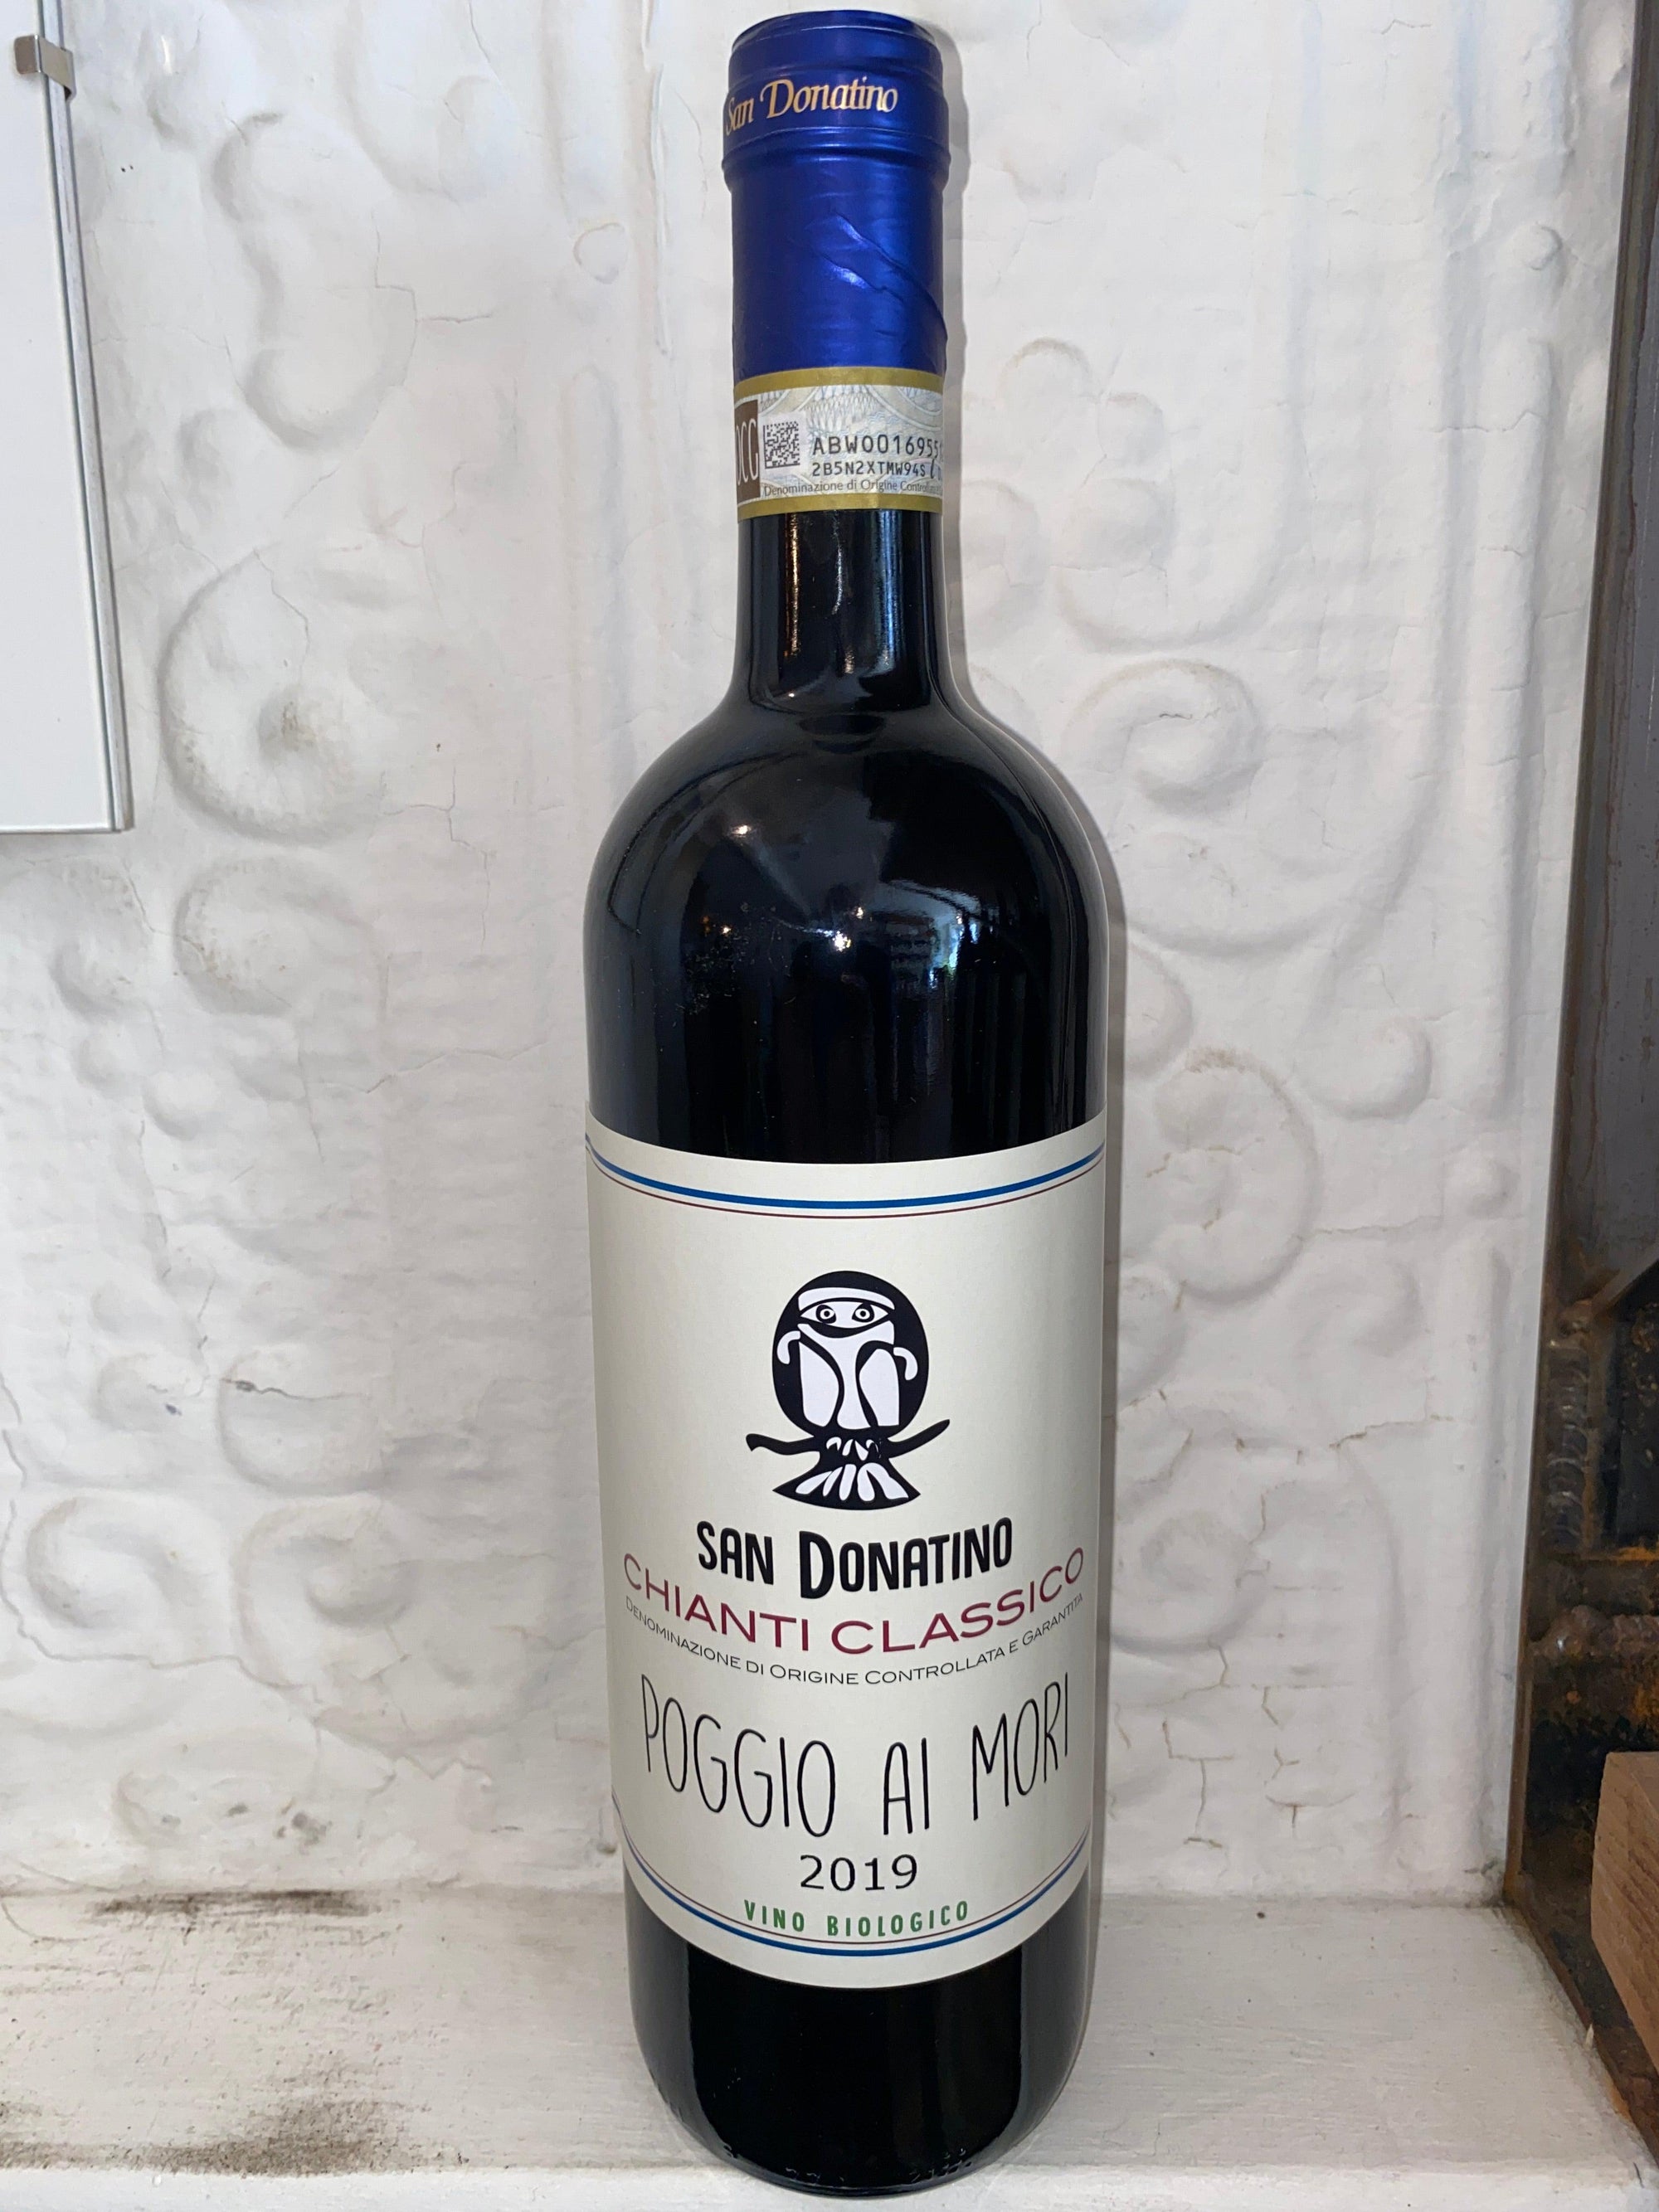 Chianti Classico Poggio ai Mori, San Donatino 2019 (Tuscany, Italy)-Wine-Bibber & Bell